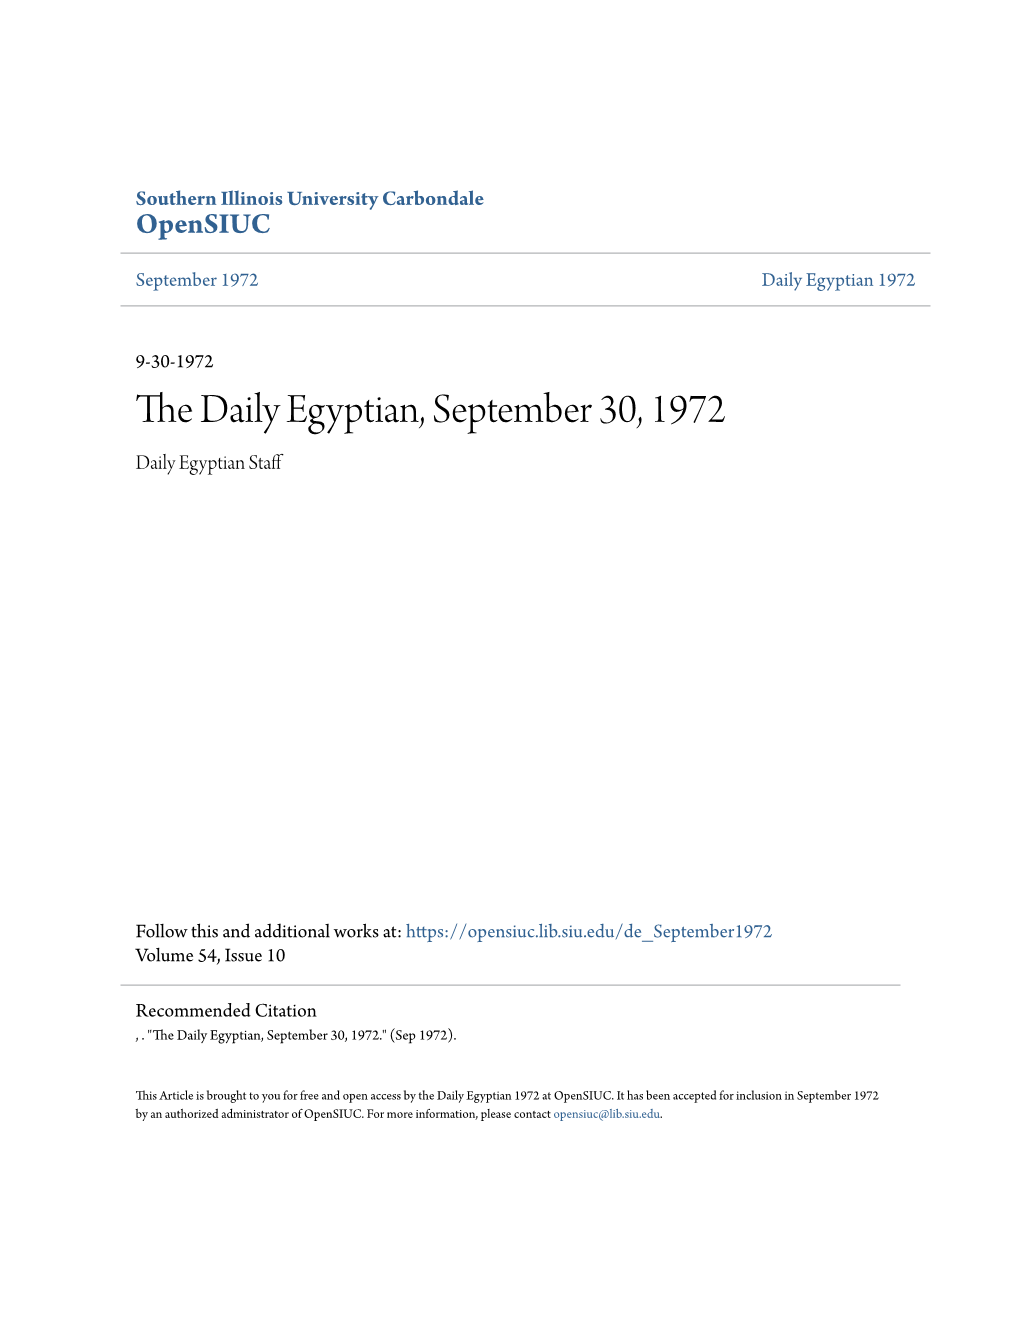 The Daily Egyptian, September 30, 1972